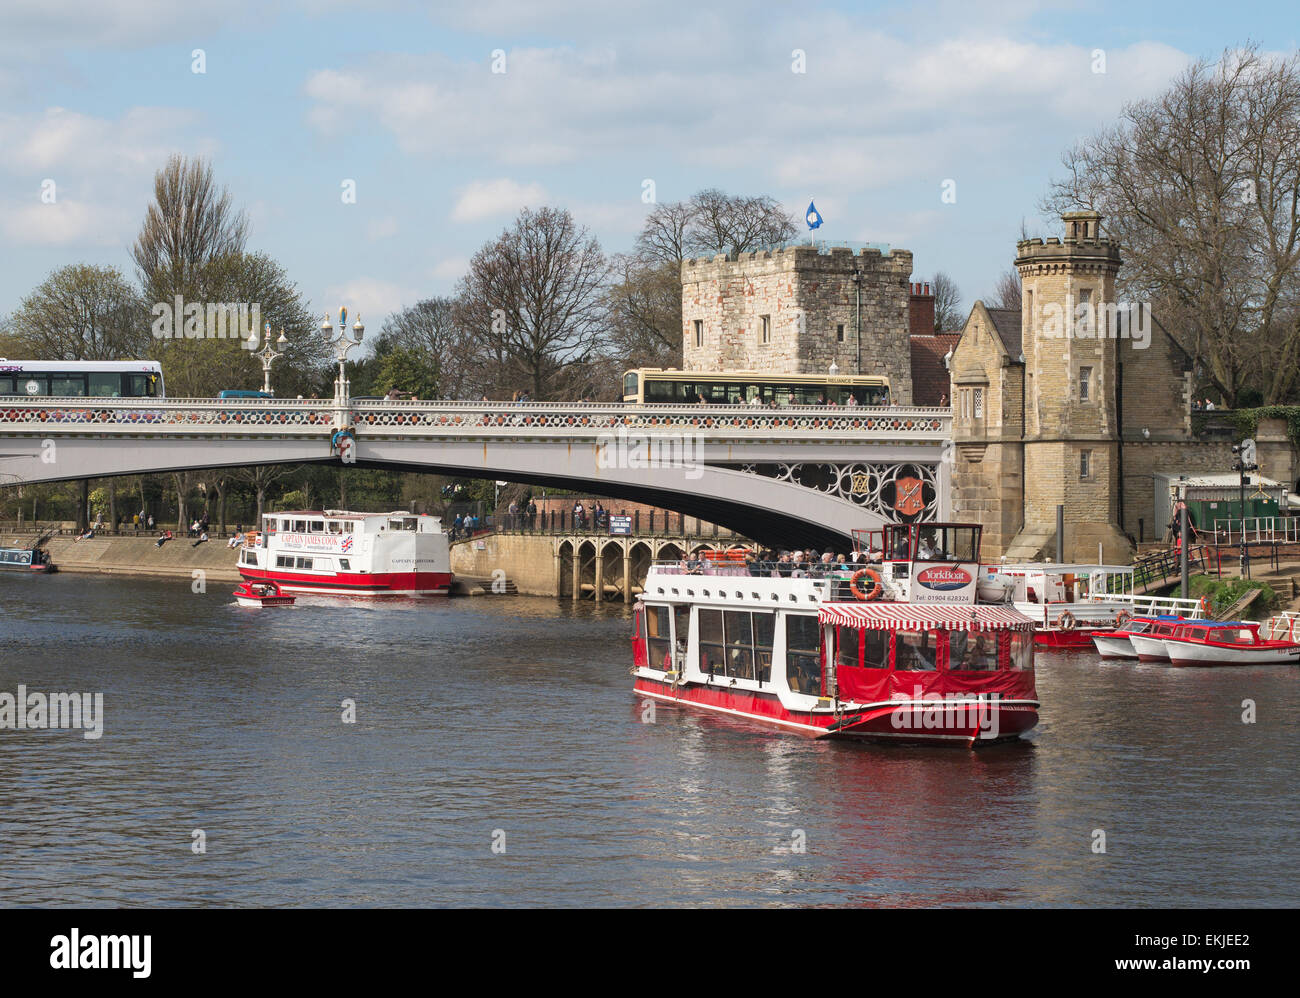 Yorkboat River Palace passing under Lendal bridge, City of York, England, UK Stock Photo